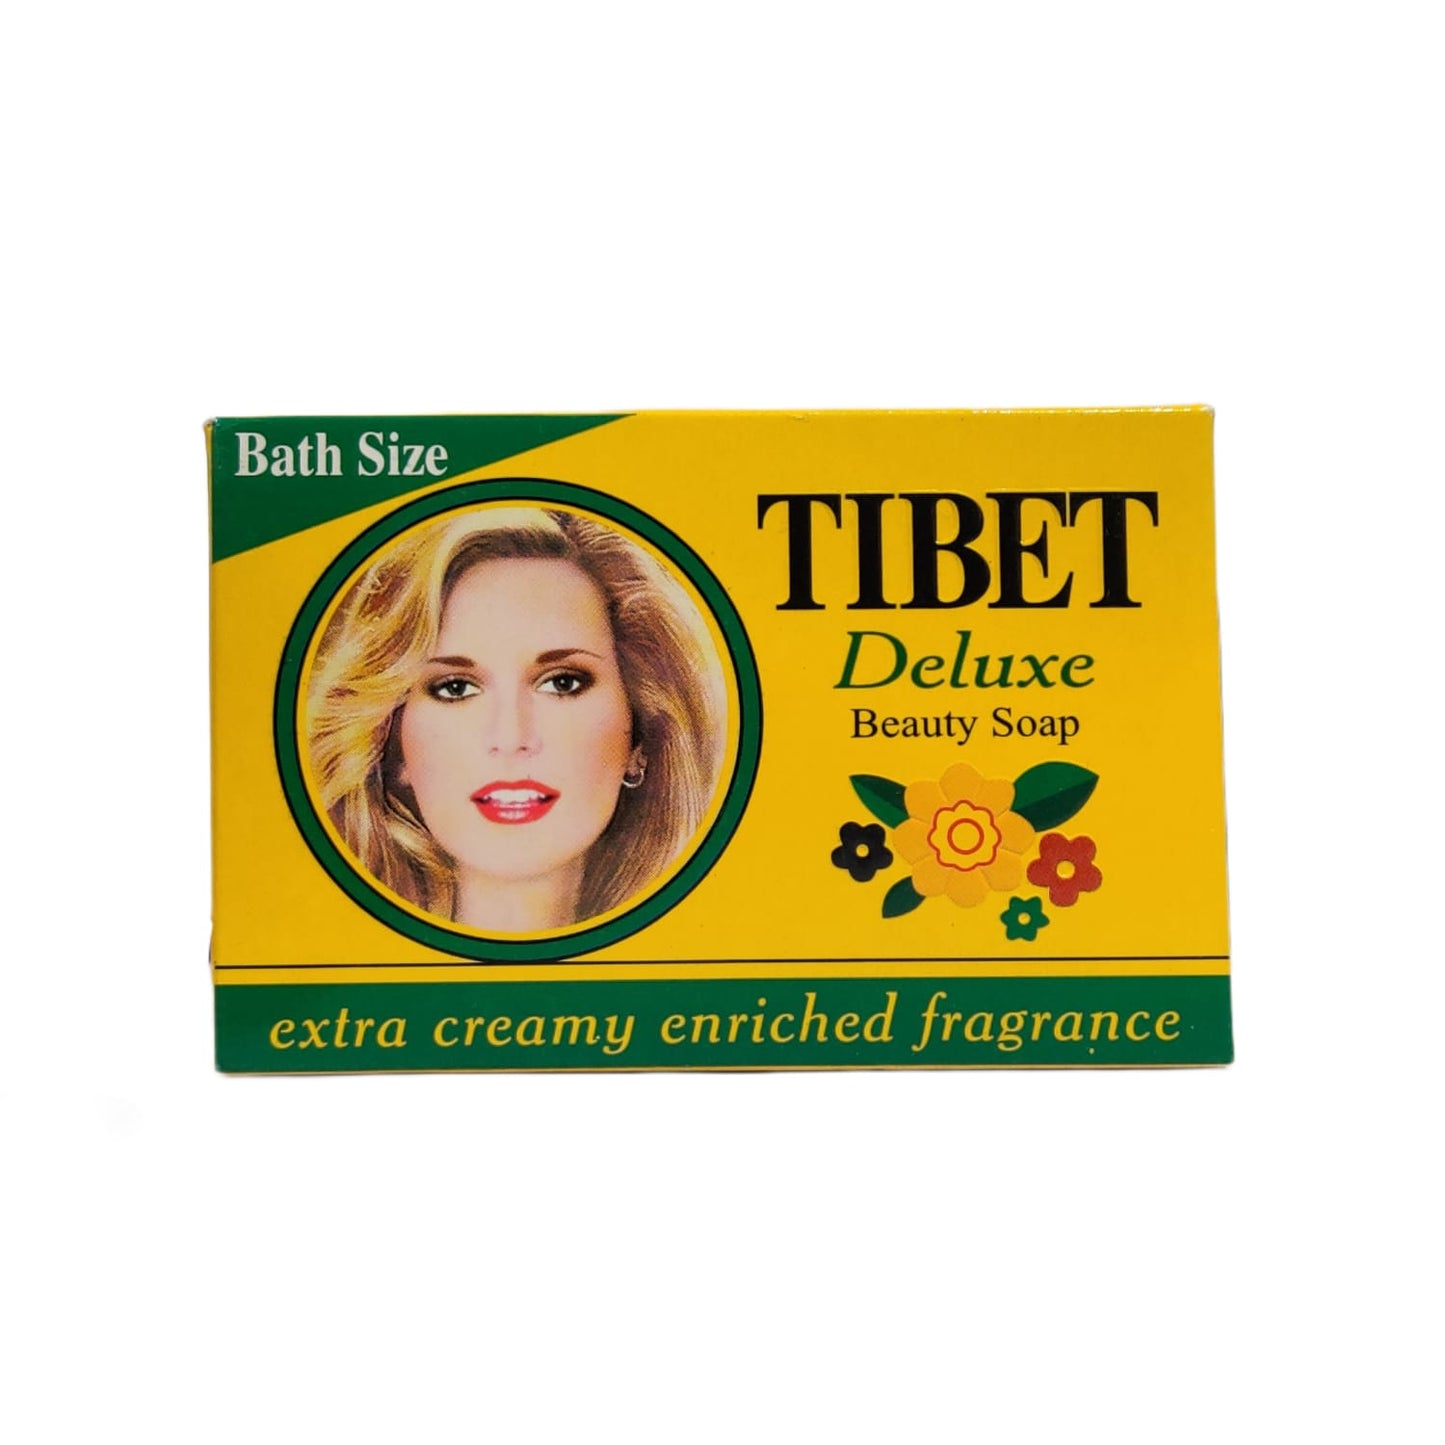 Tibet Deluxe Beauty Soap Bath Size 95 gm